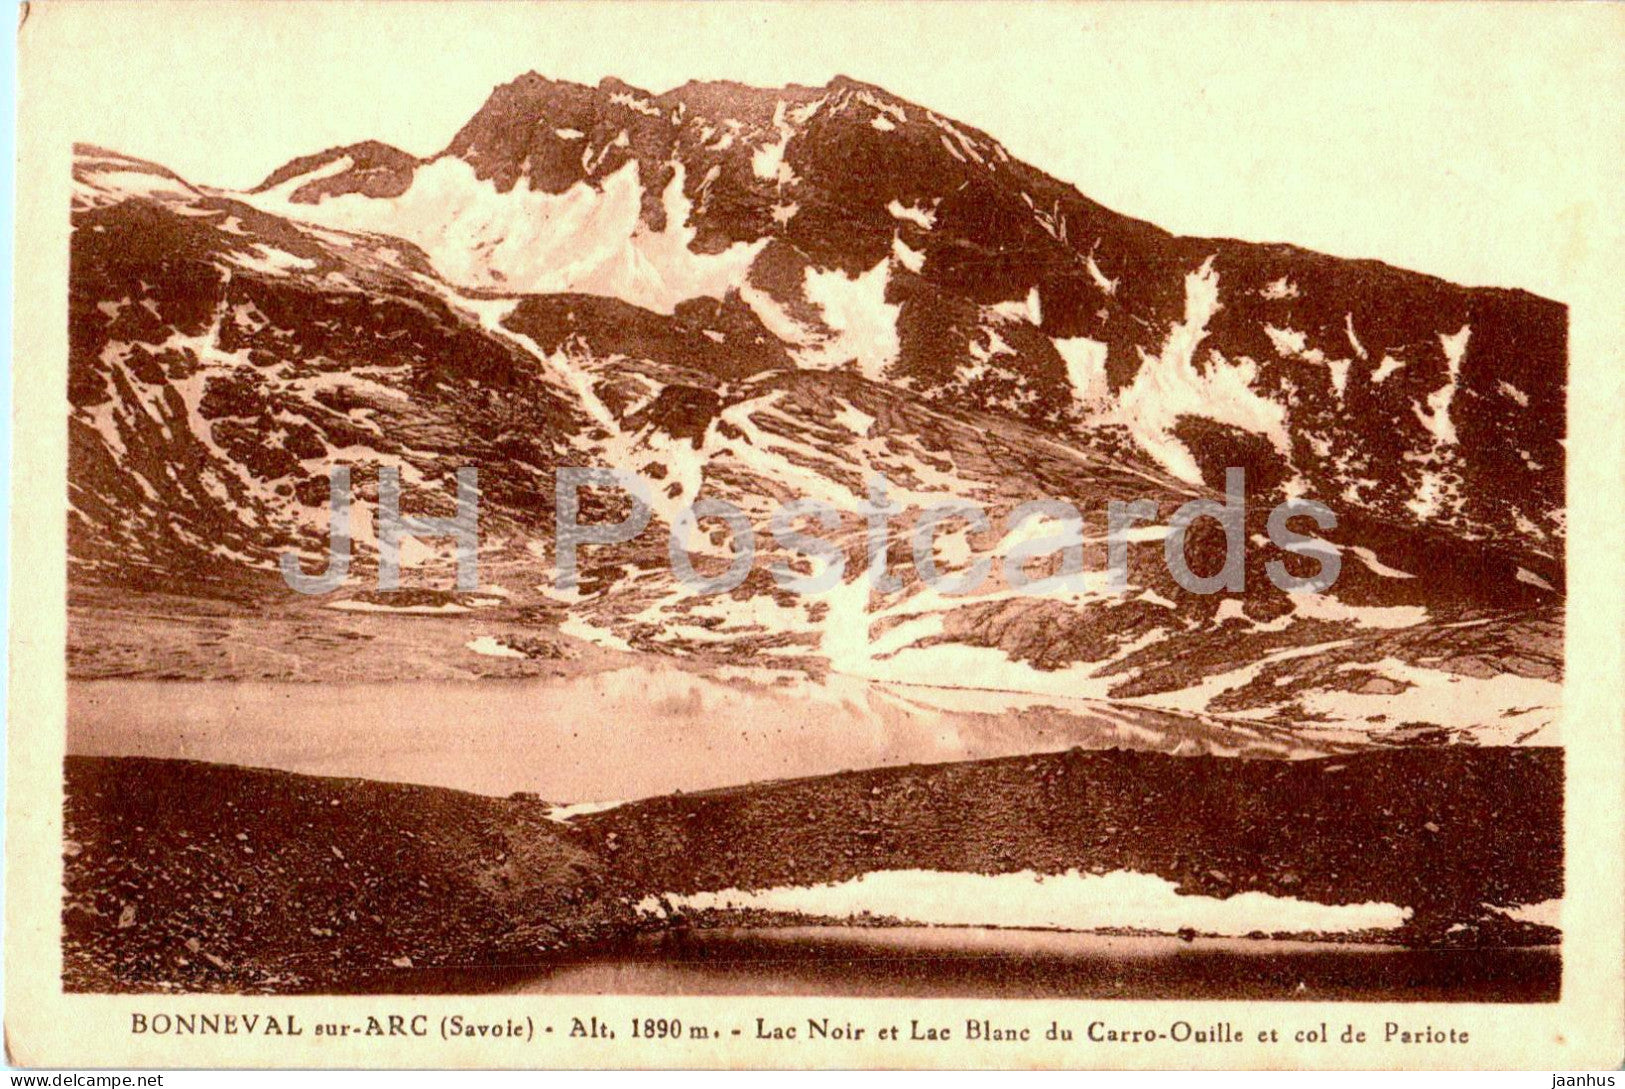 Bonneval sur Arc - Lac Noir et Lac Blanc du Carro Ouille et col de Pariote - old postcard - France - unused - JH Postcards